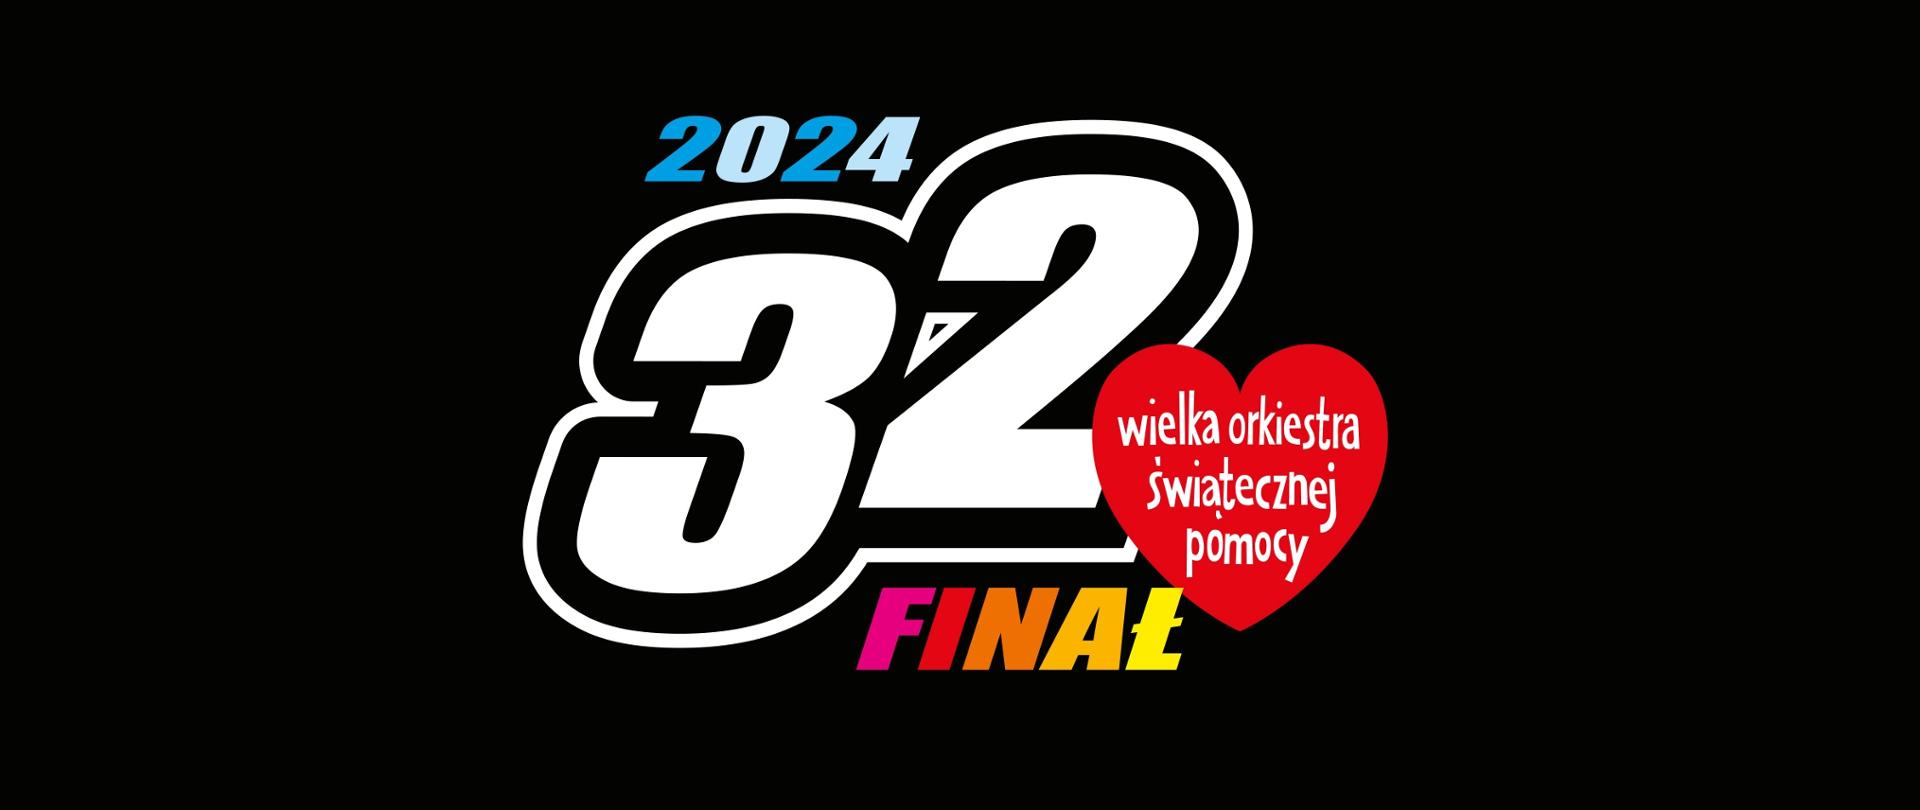 Zdjęcie przedstawia logo 32 finału WOŚP.